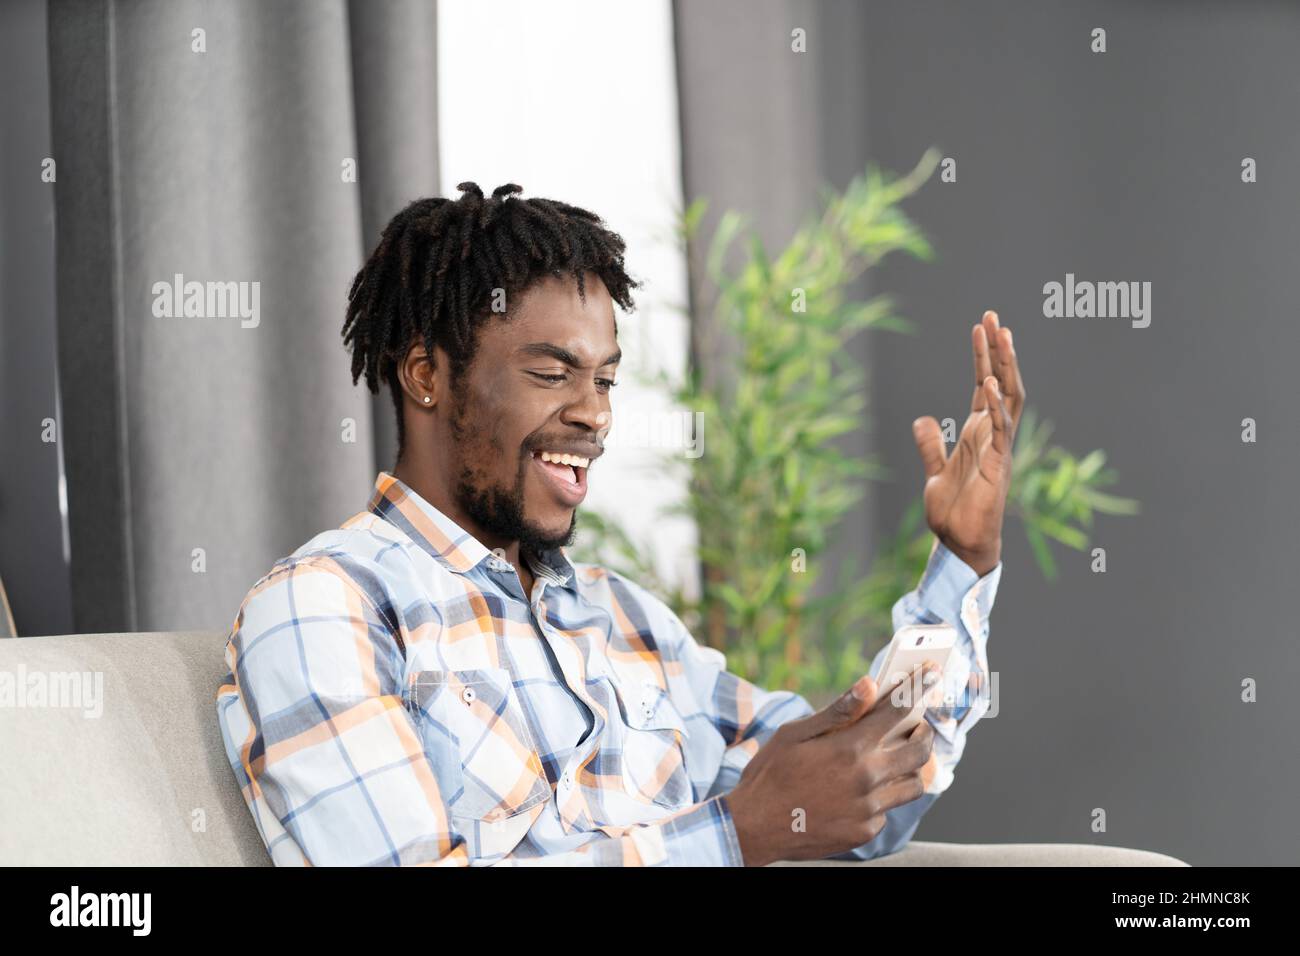 Felice ridere studente afroamericano utilizzare smartphone per videochiamare o guardare video online. Ritratto di uomo felice gesturing guardando lo smartphone seduto sul divano. Concetto di social media. Foto Stock